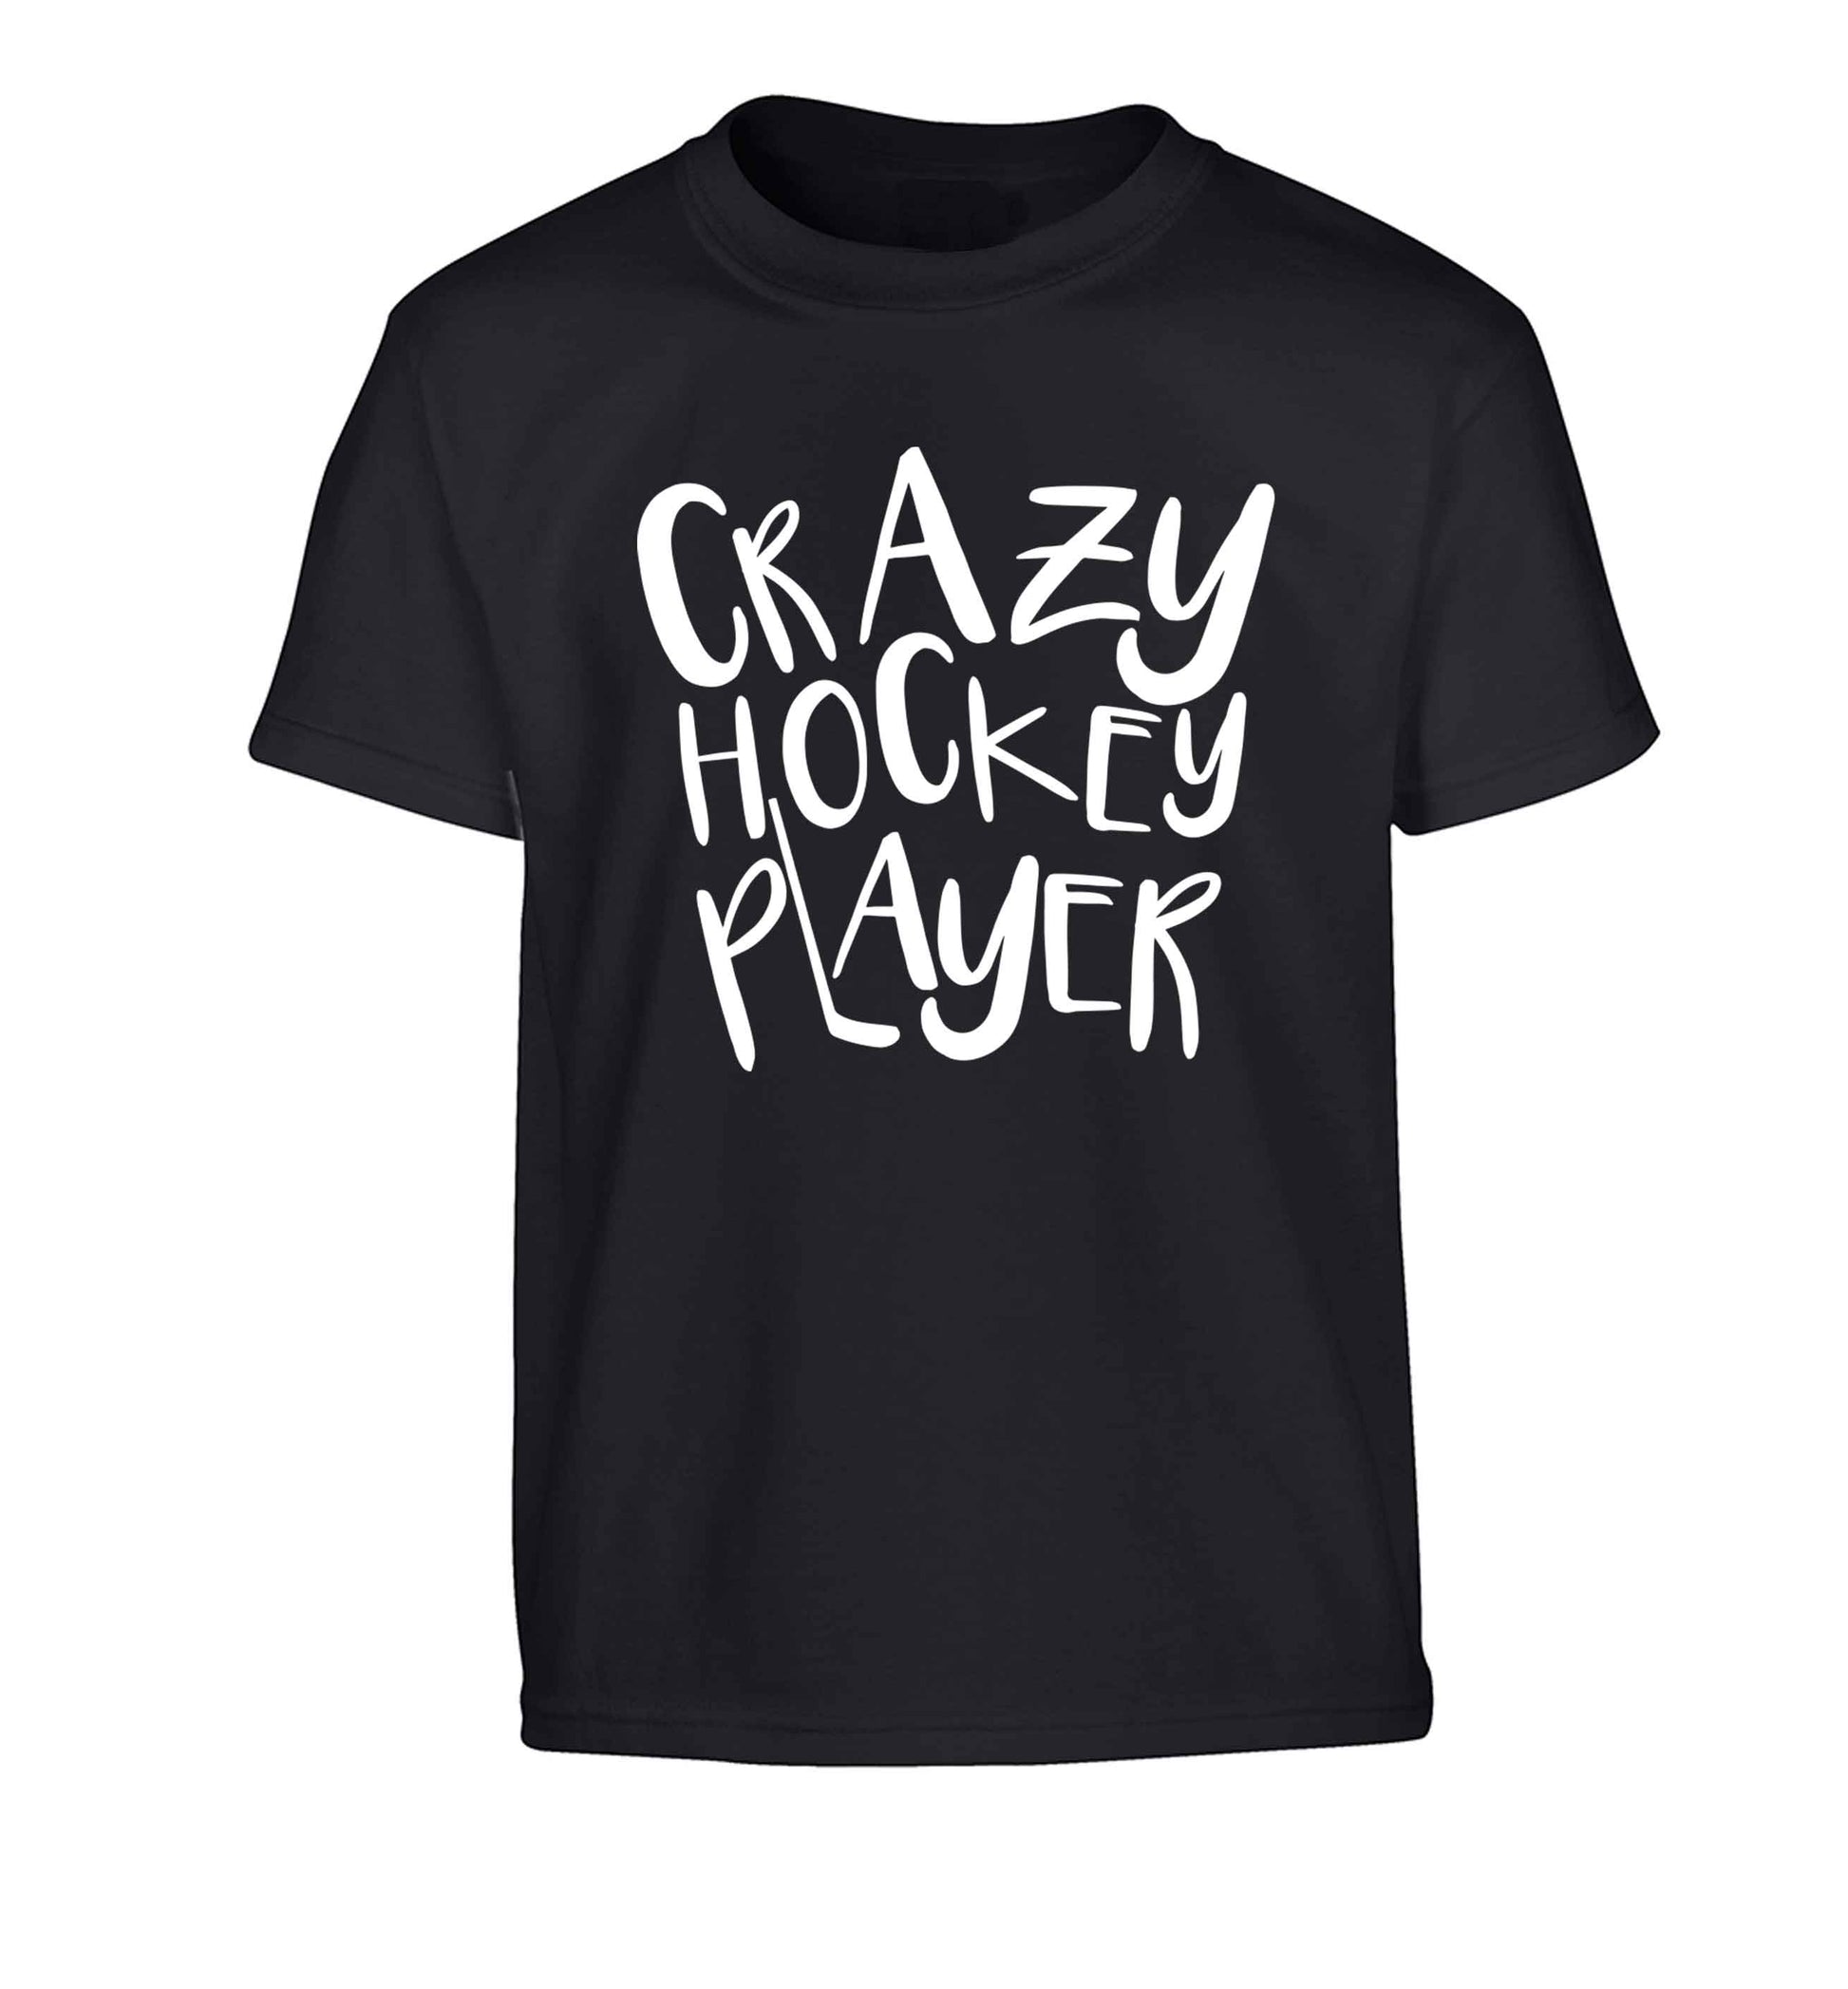 Crazy hockey player Children's black Tshirt 12-13 Years